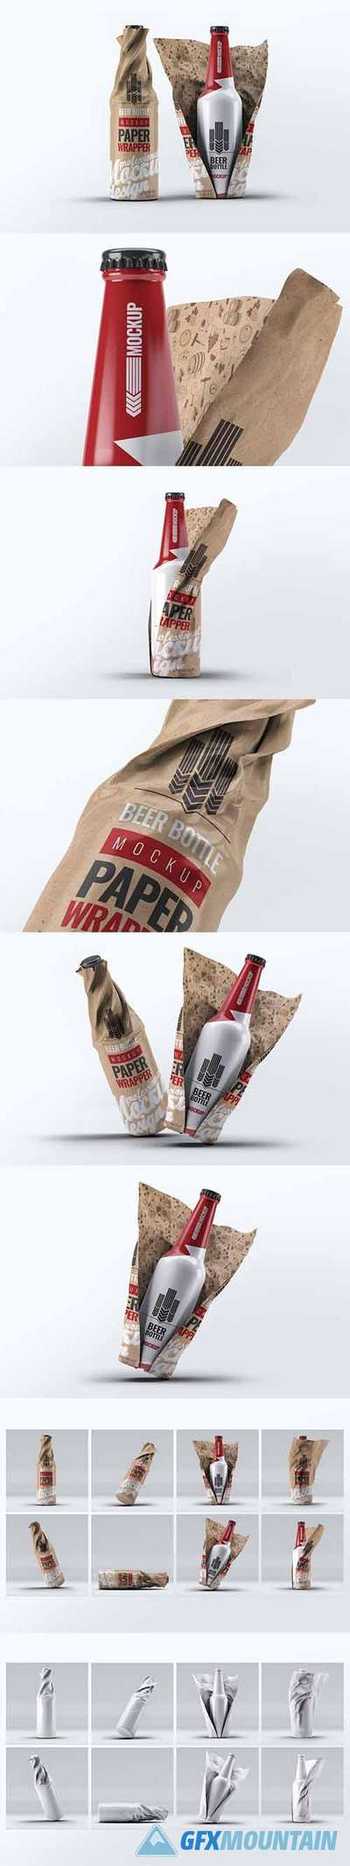 Beer Bottle Paper Wrapped Mock-Up